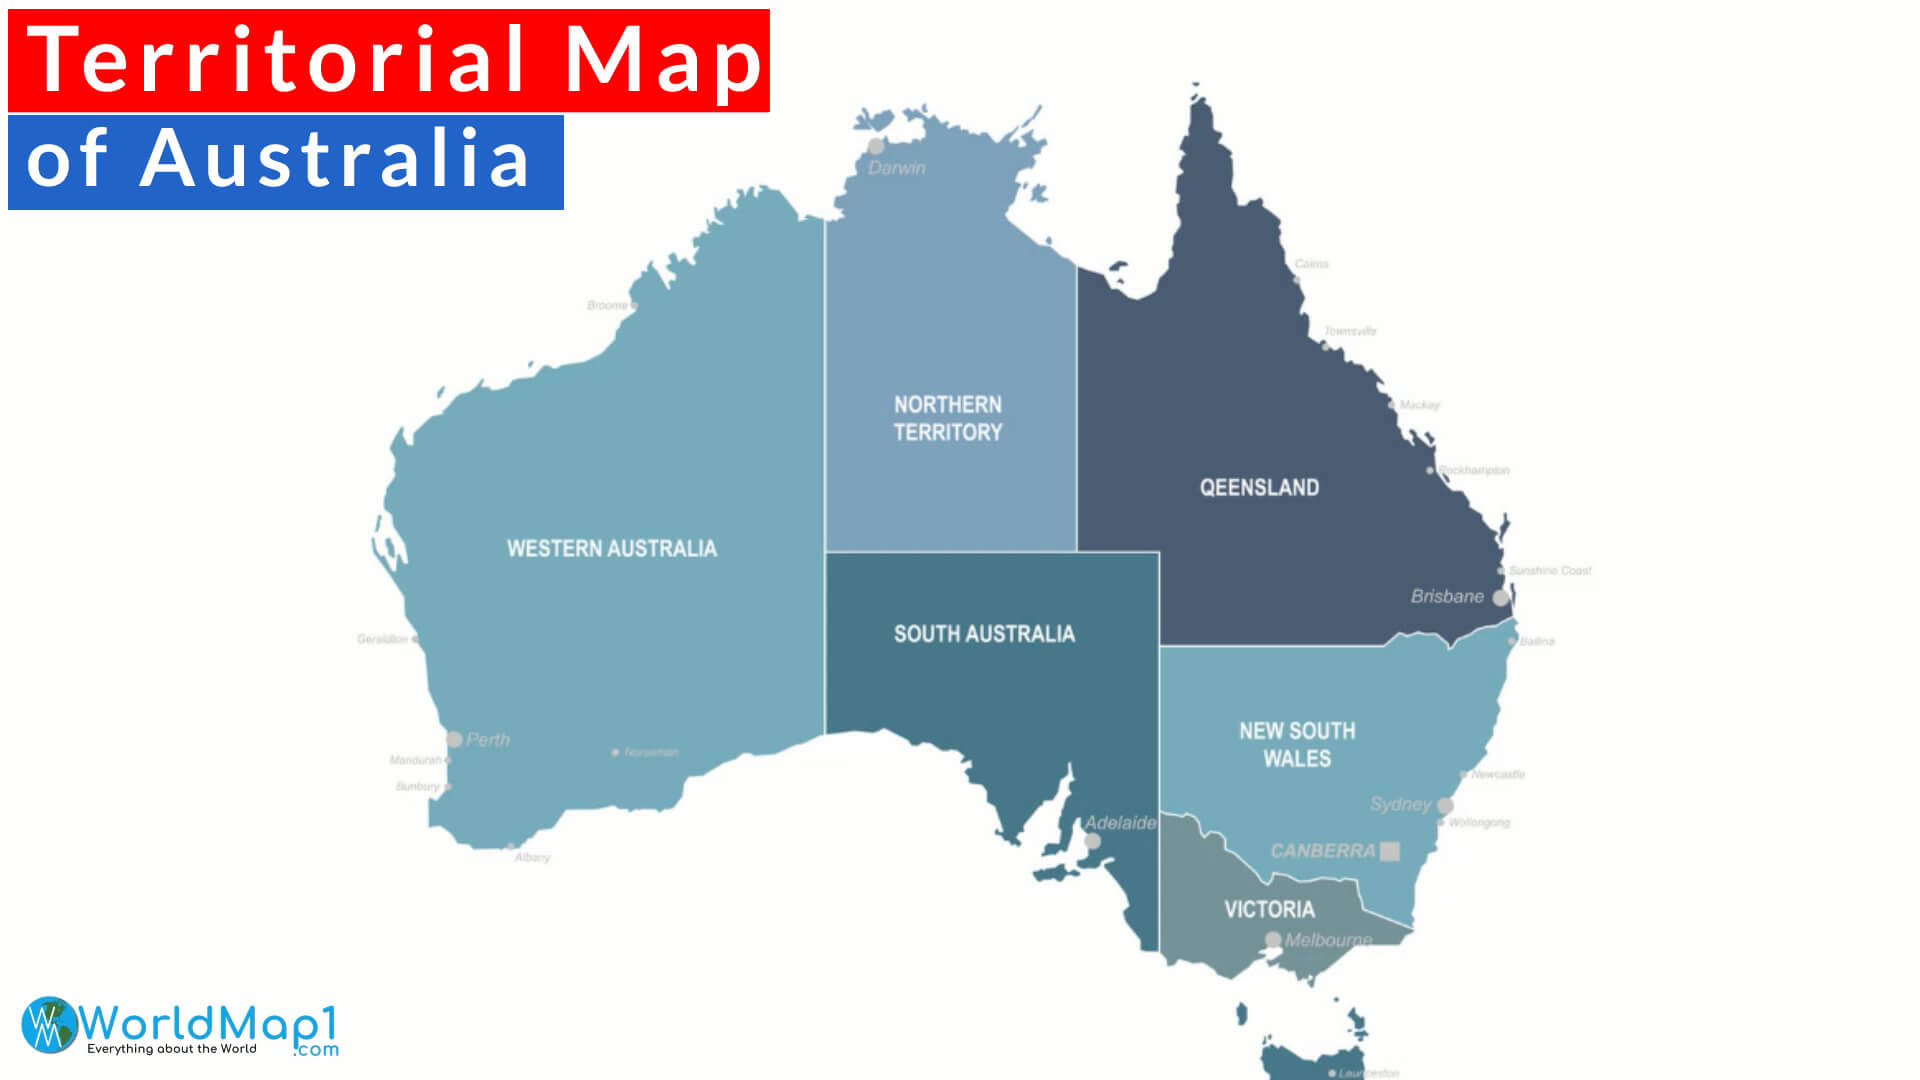 Territorial Map of Australia